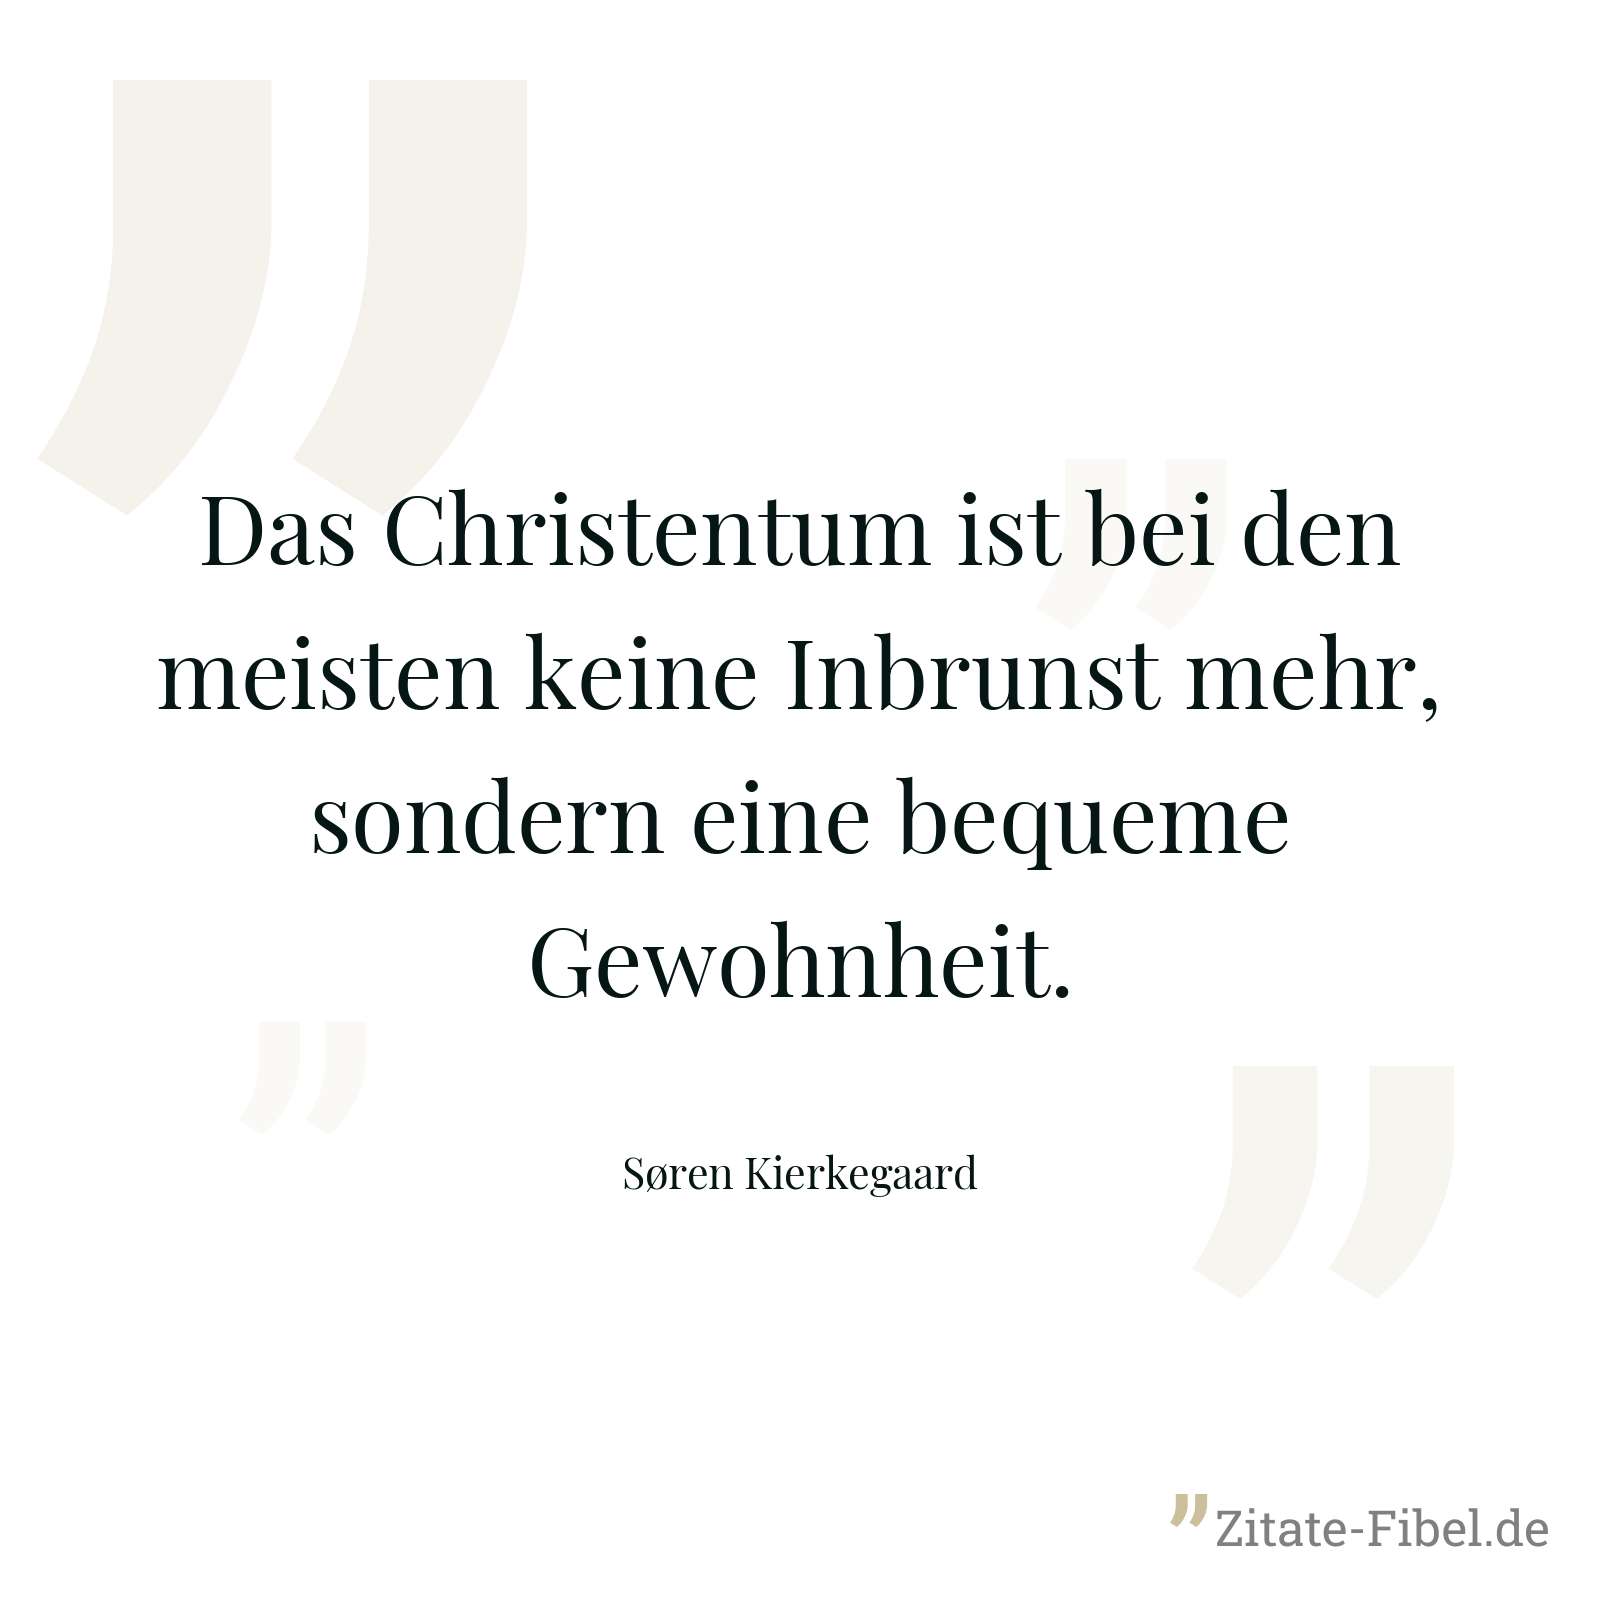 Das Christentum ist bei den meisten keine Inbrunst mehr, sondern eine bequeme Gewohnheit. - Søren Kierkegaard